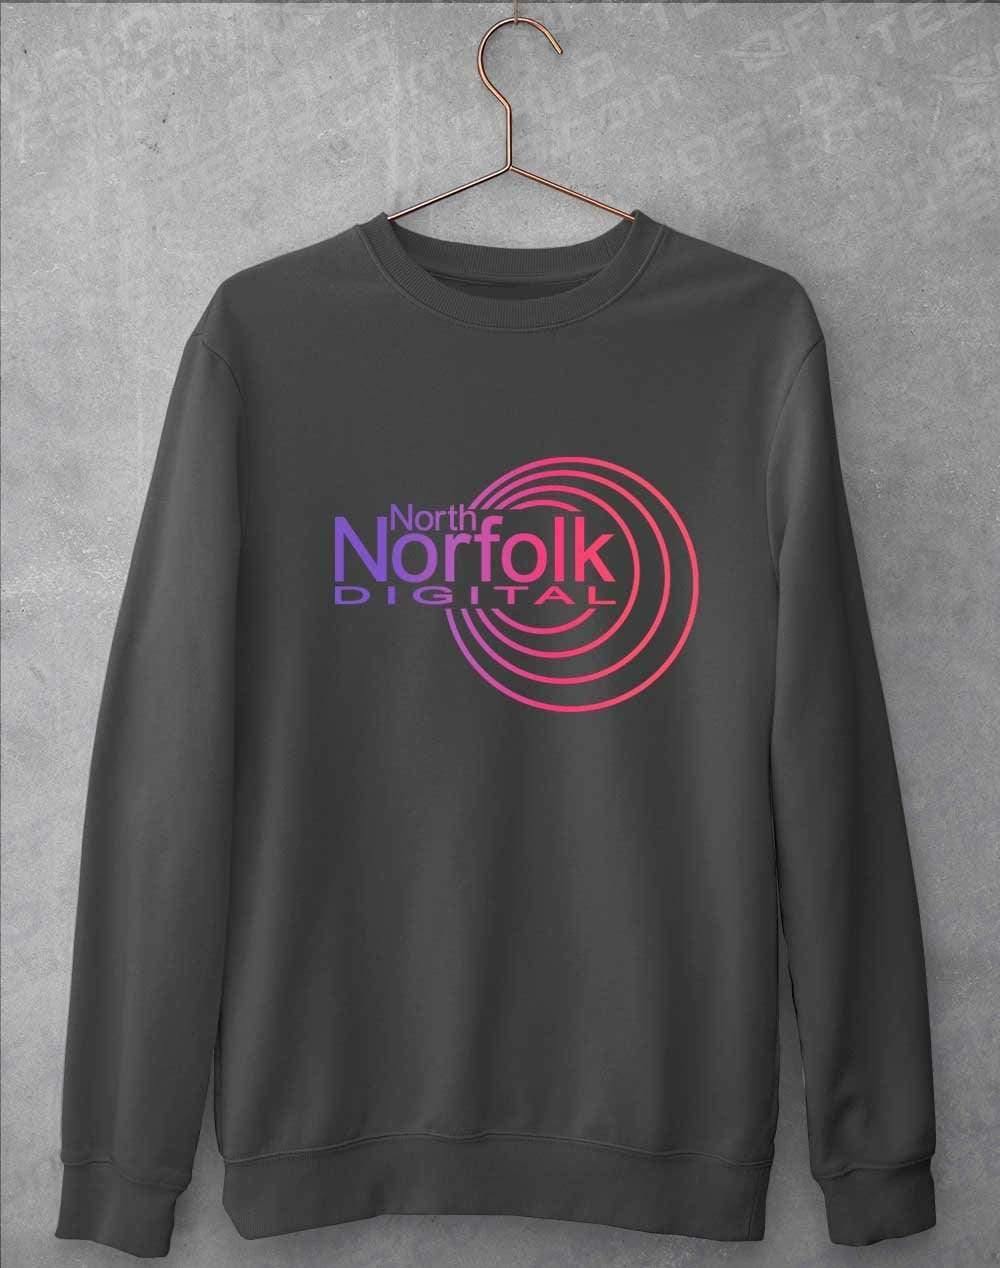 North Norfolk Digital Sweatshirt S / Charcoal  - Off World Tees